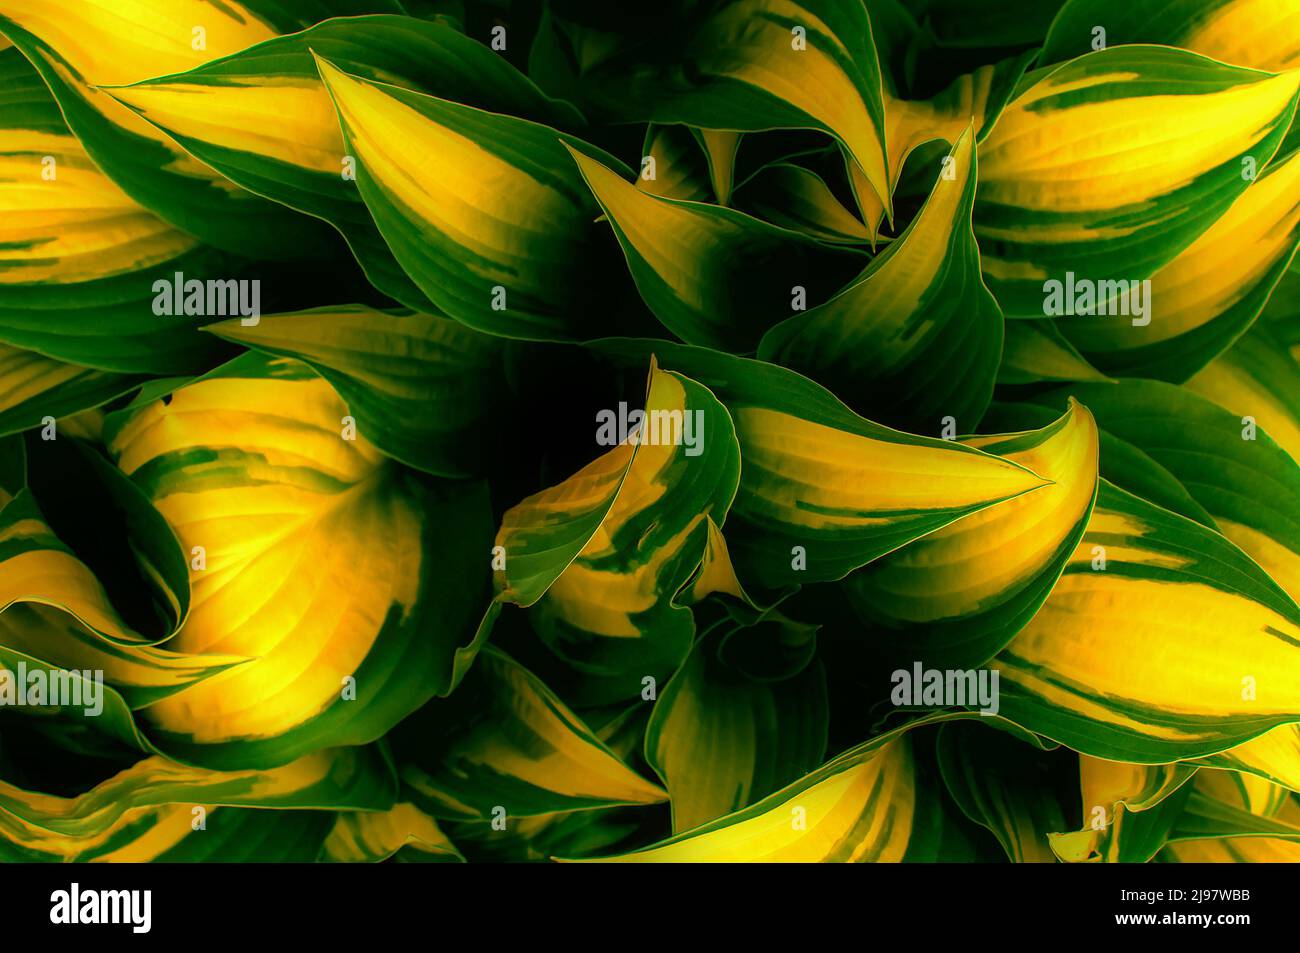 Hintergrund mit gelblich-grünen Blättern mit einer bestimmten Form und einem bestimmten Muster, Draufsicht aus nächster Nähe Stockfoto